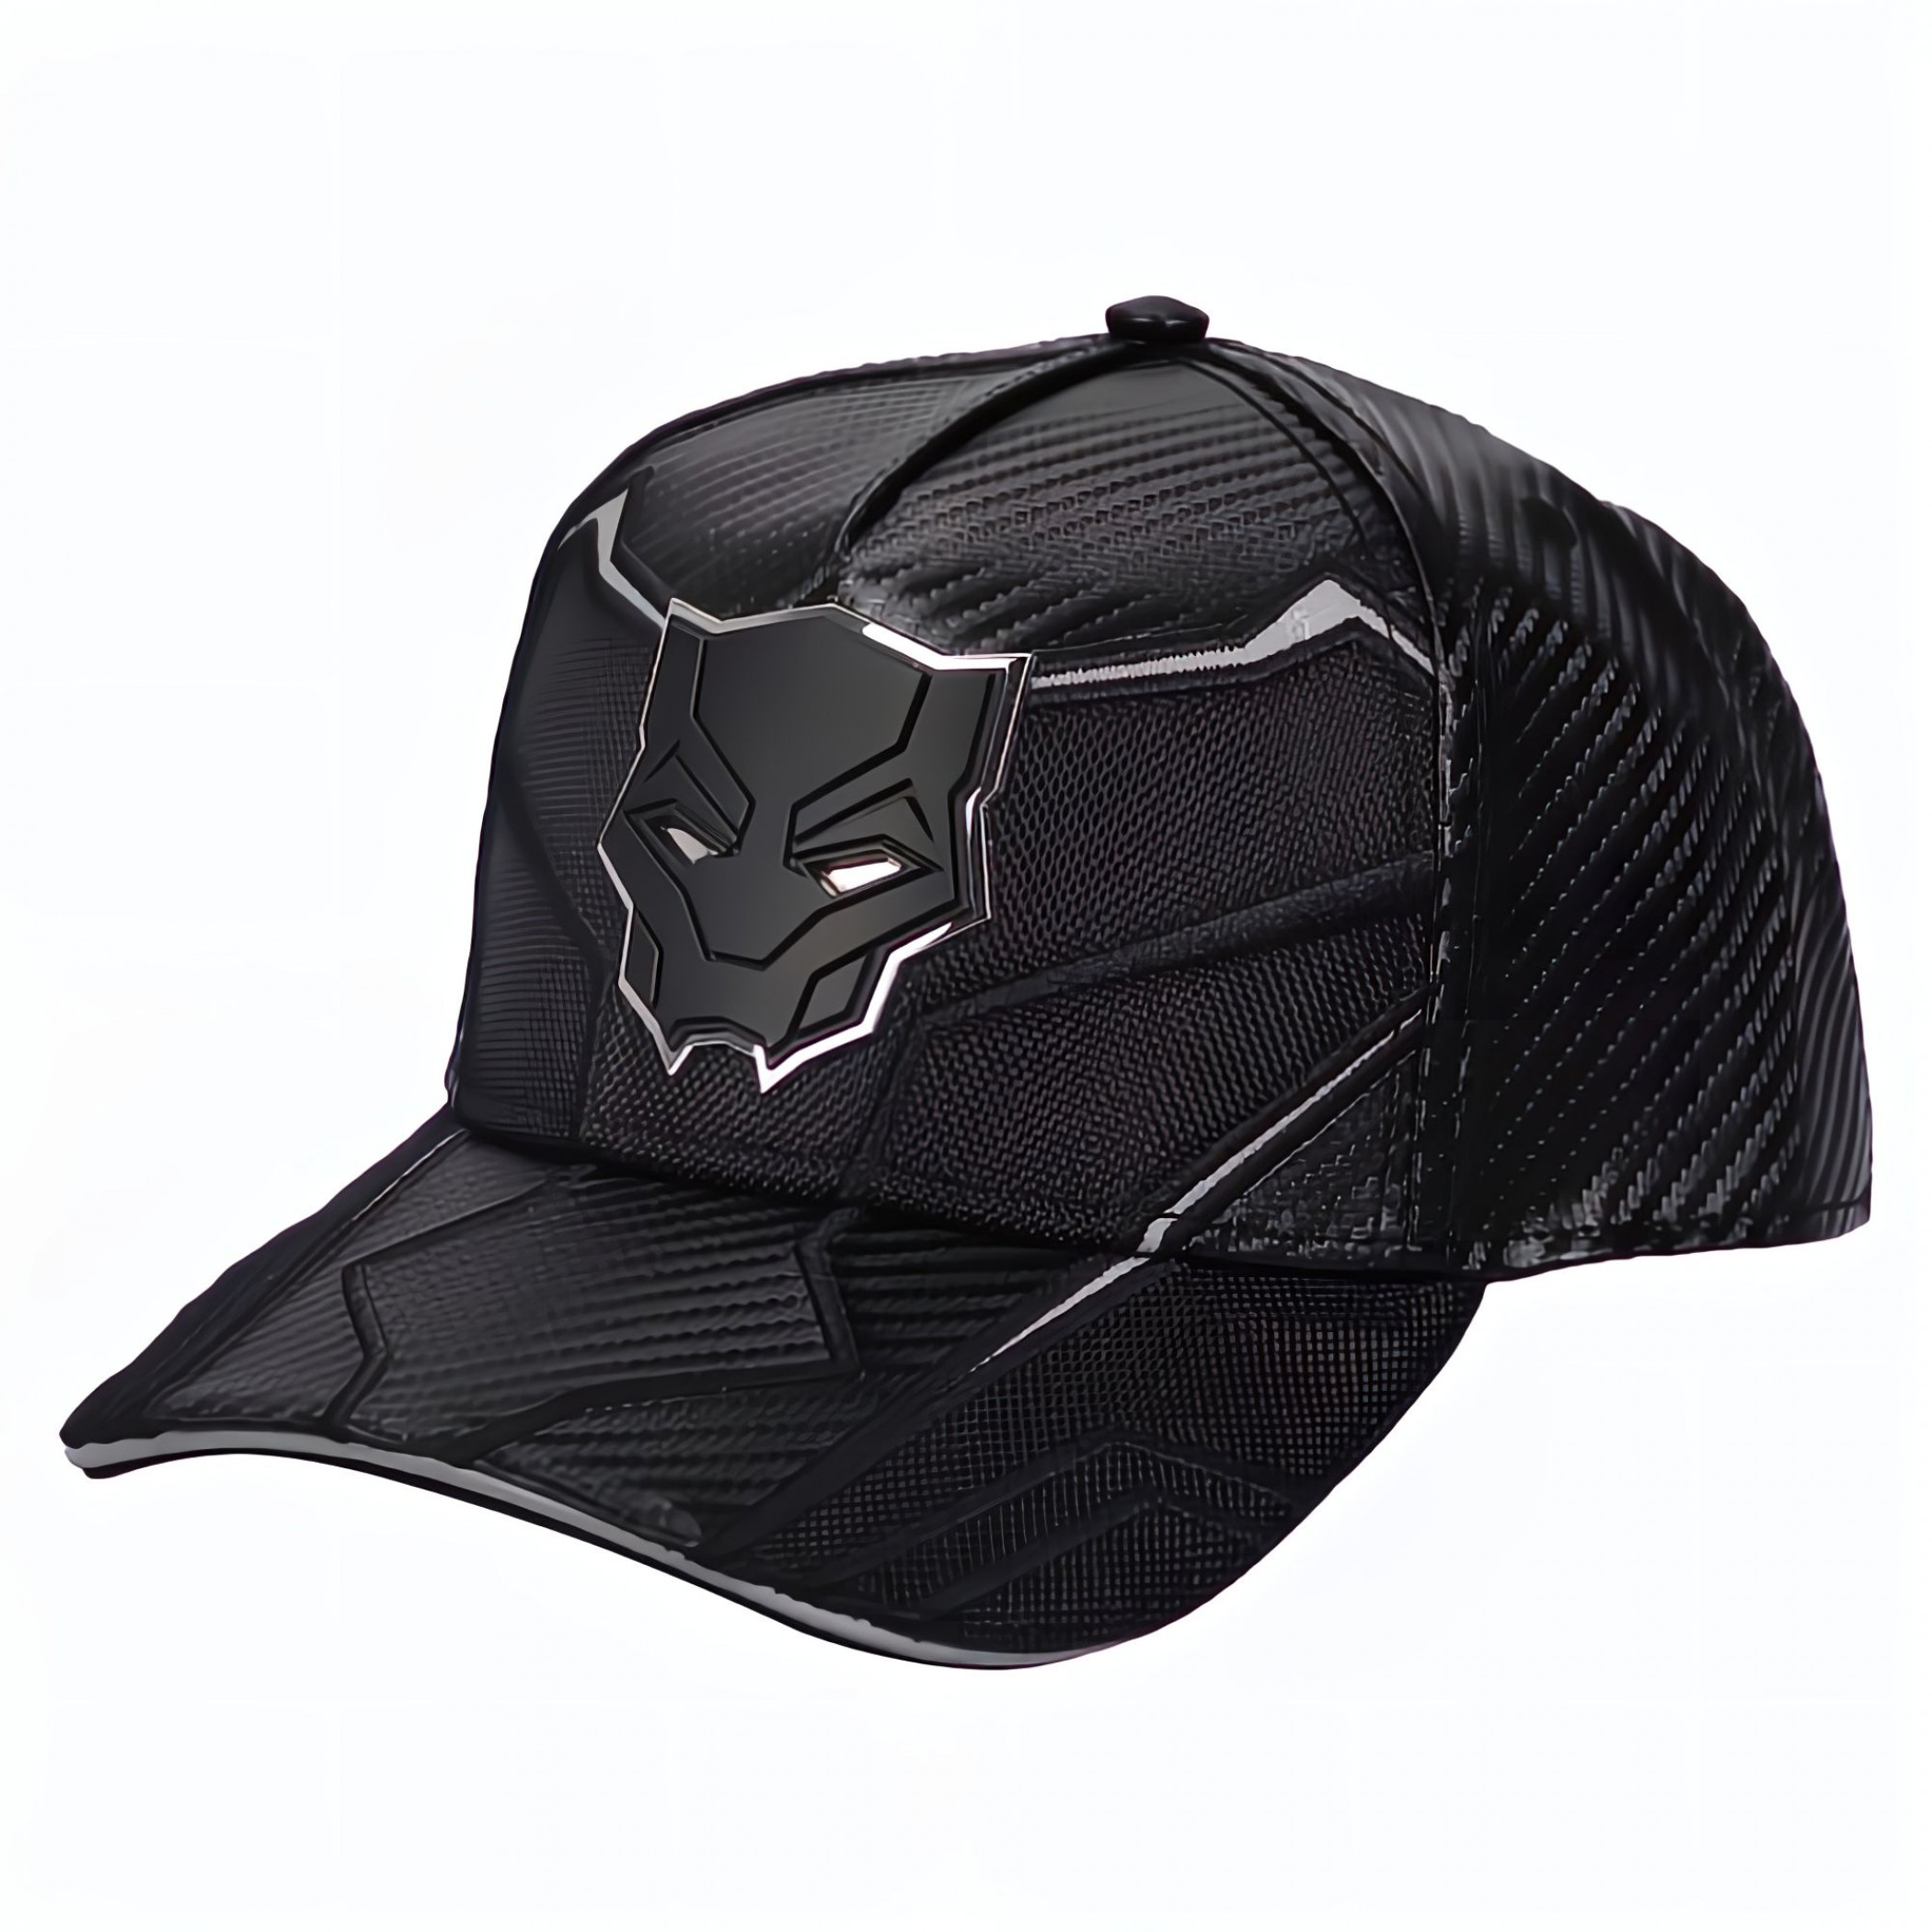 Black Panther Carbon Fiber Armor Snapback Hat